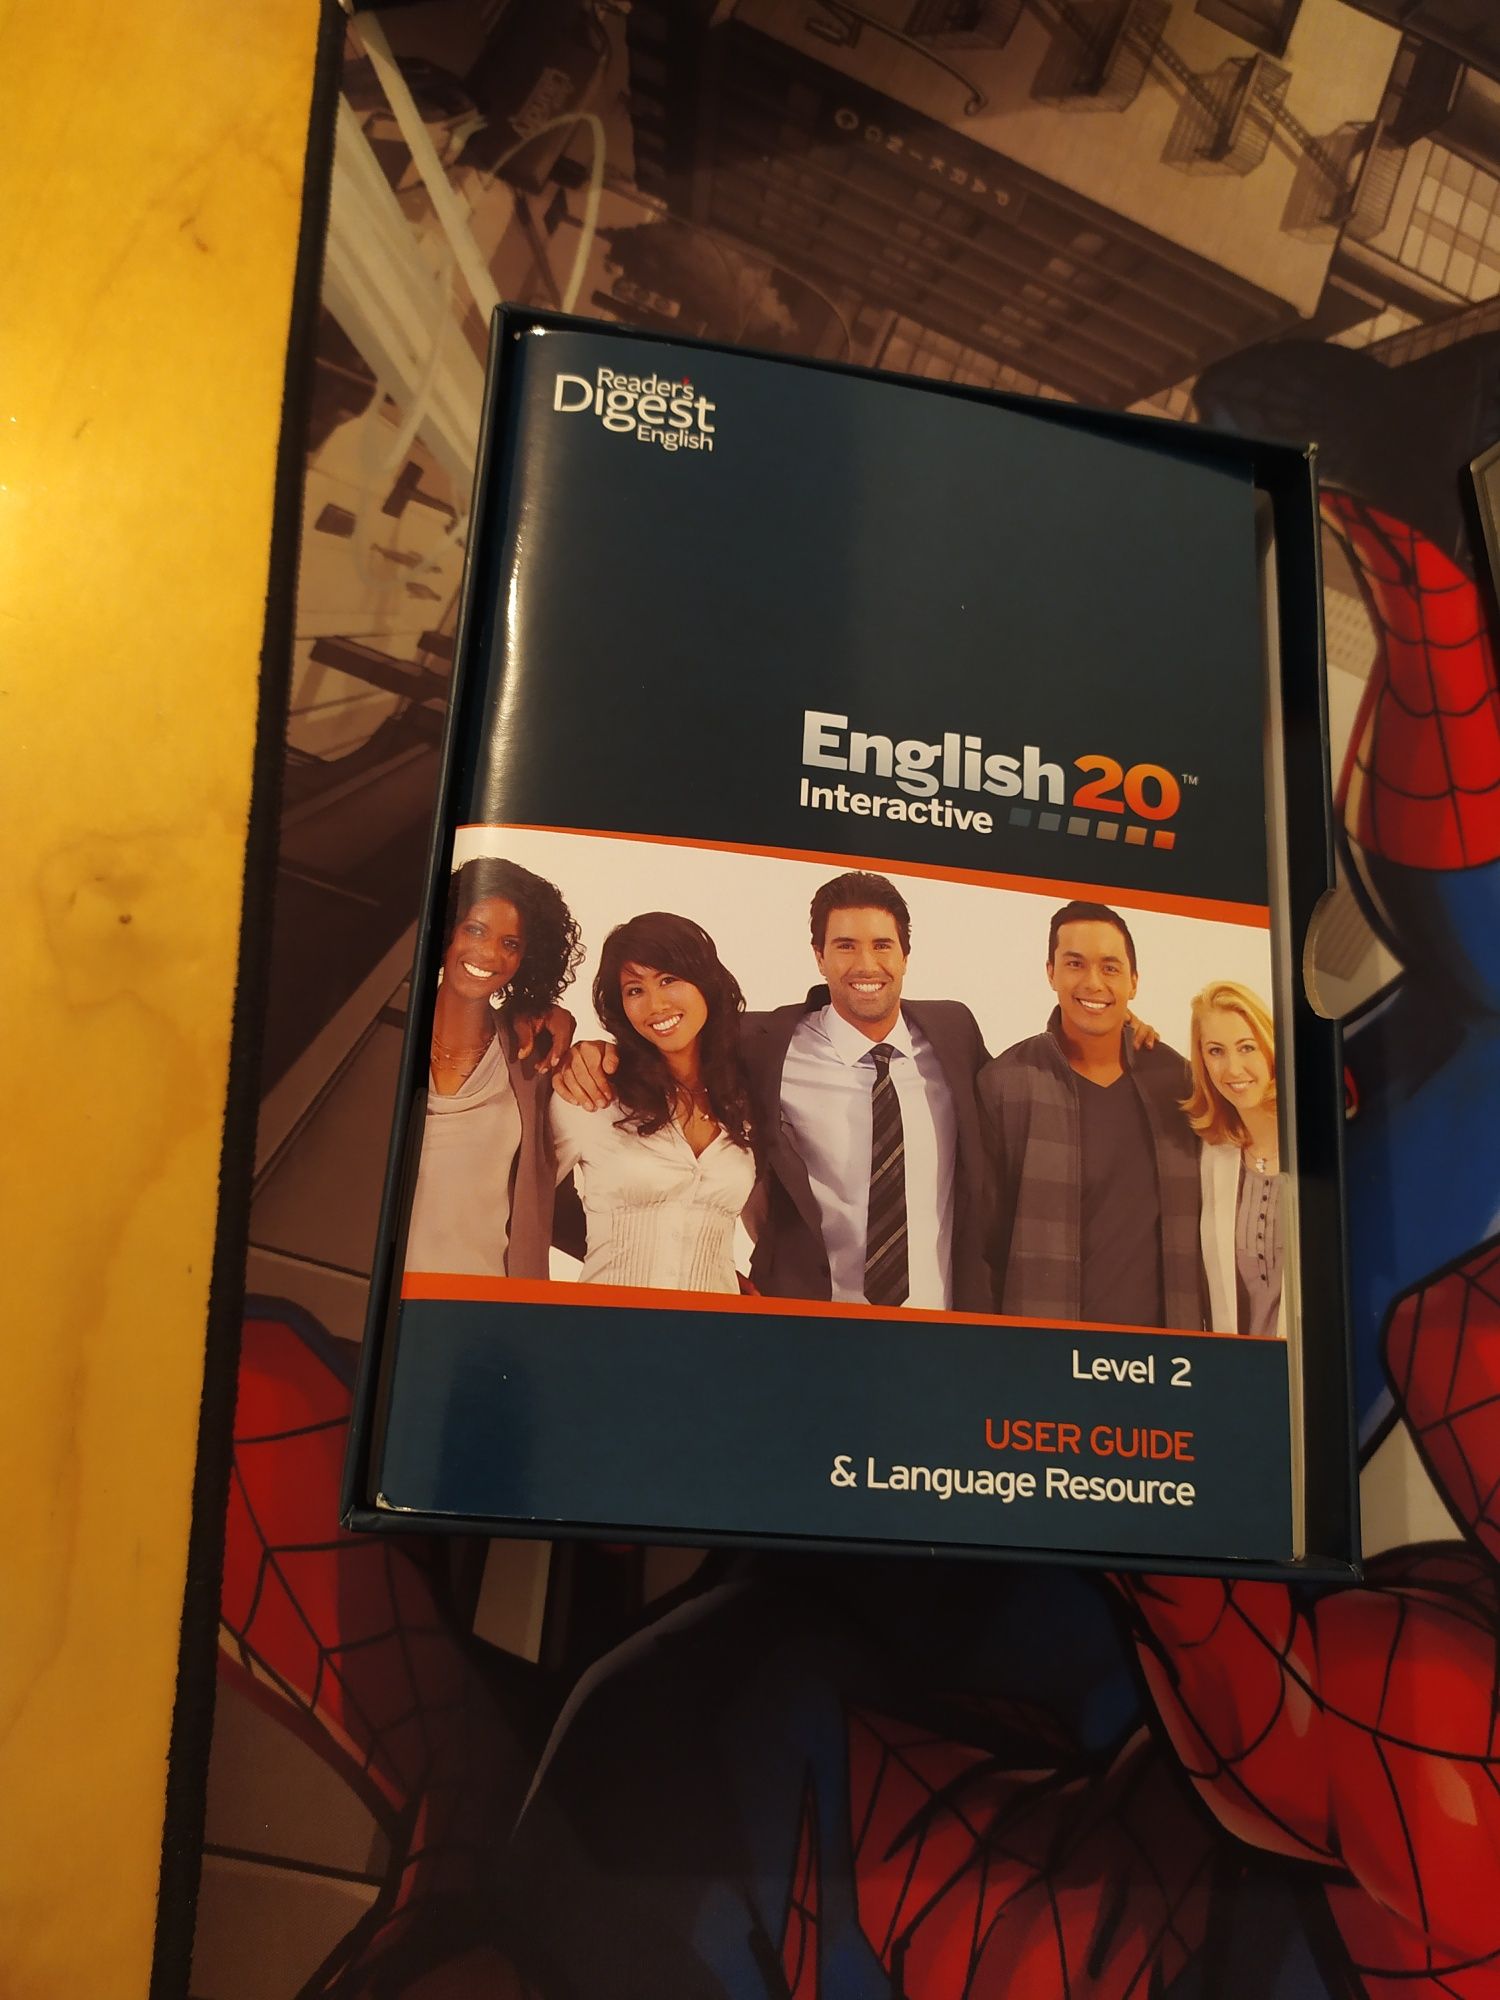 Набор "English 20 interactive", для изучения английского языка